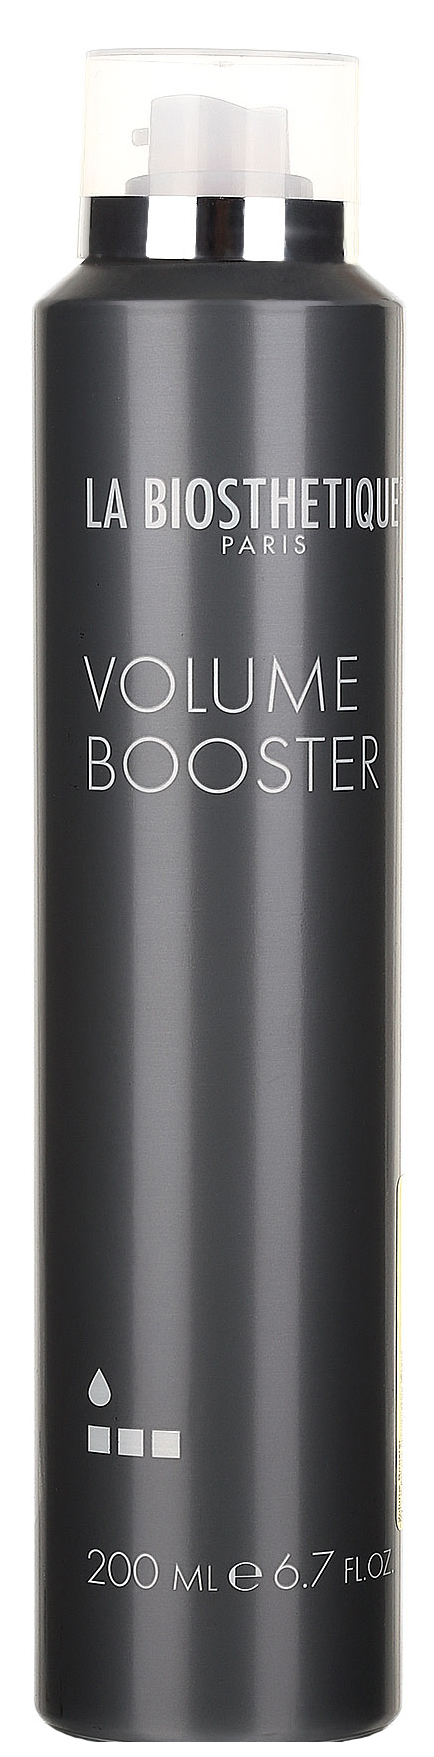 Мусс для волос La Biosthetique Base Volume Booster 200 мл syoss мусс для укладки волос экстрасильная фиксация volume